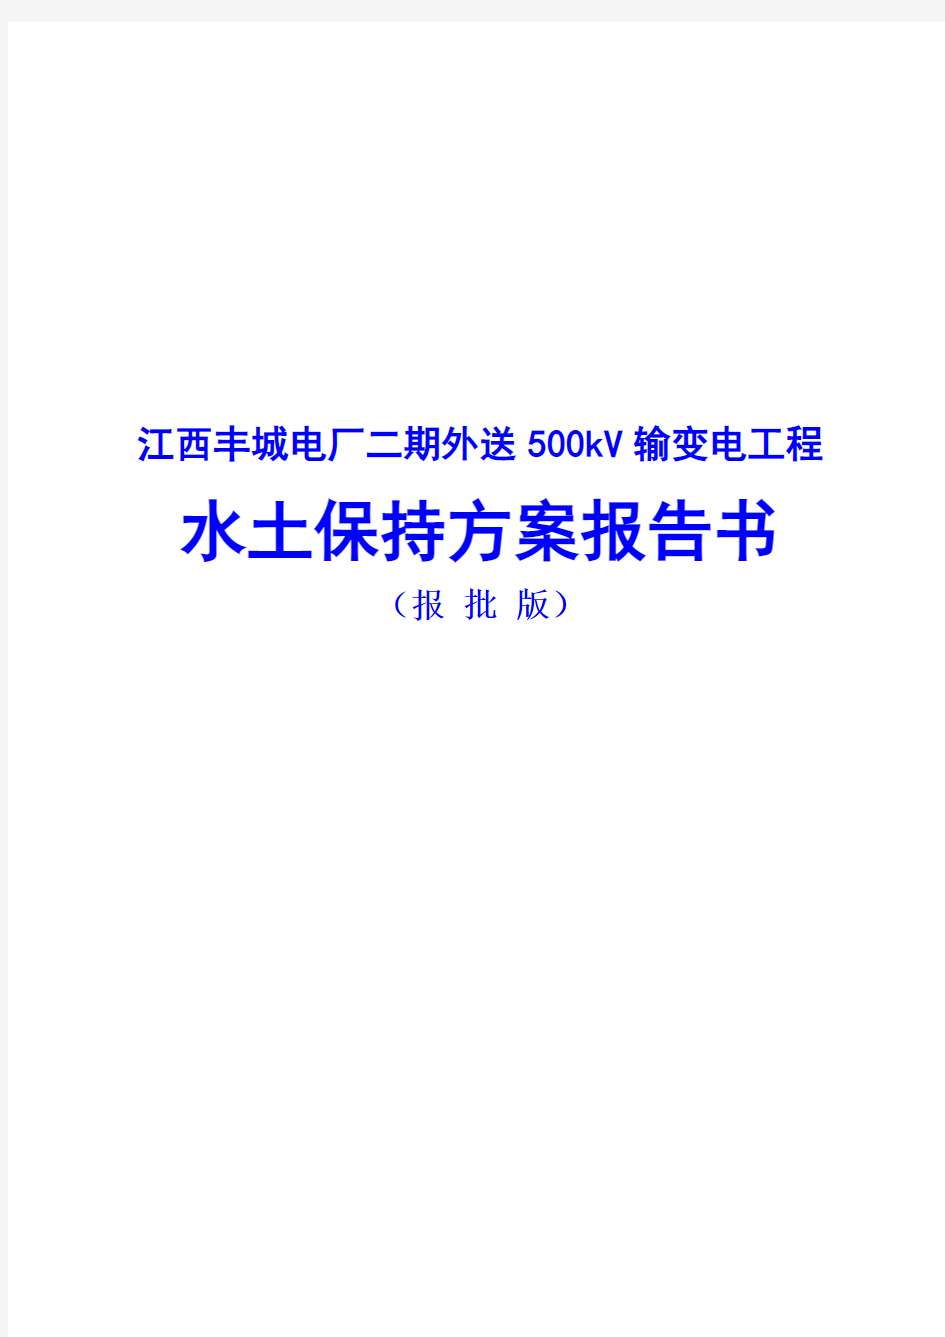 江西丰城电厂二期外送500kV输变电工程水土保持方案报告书